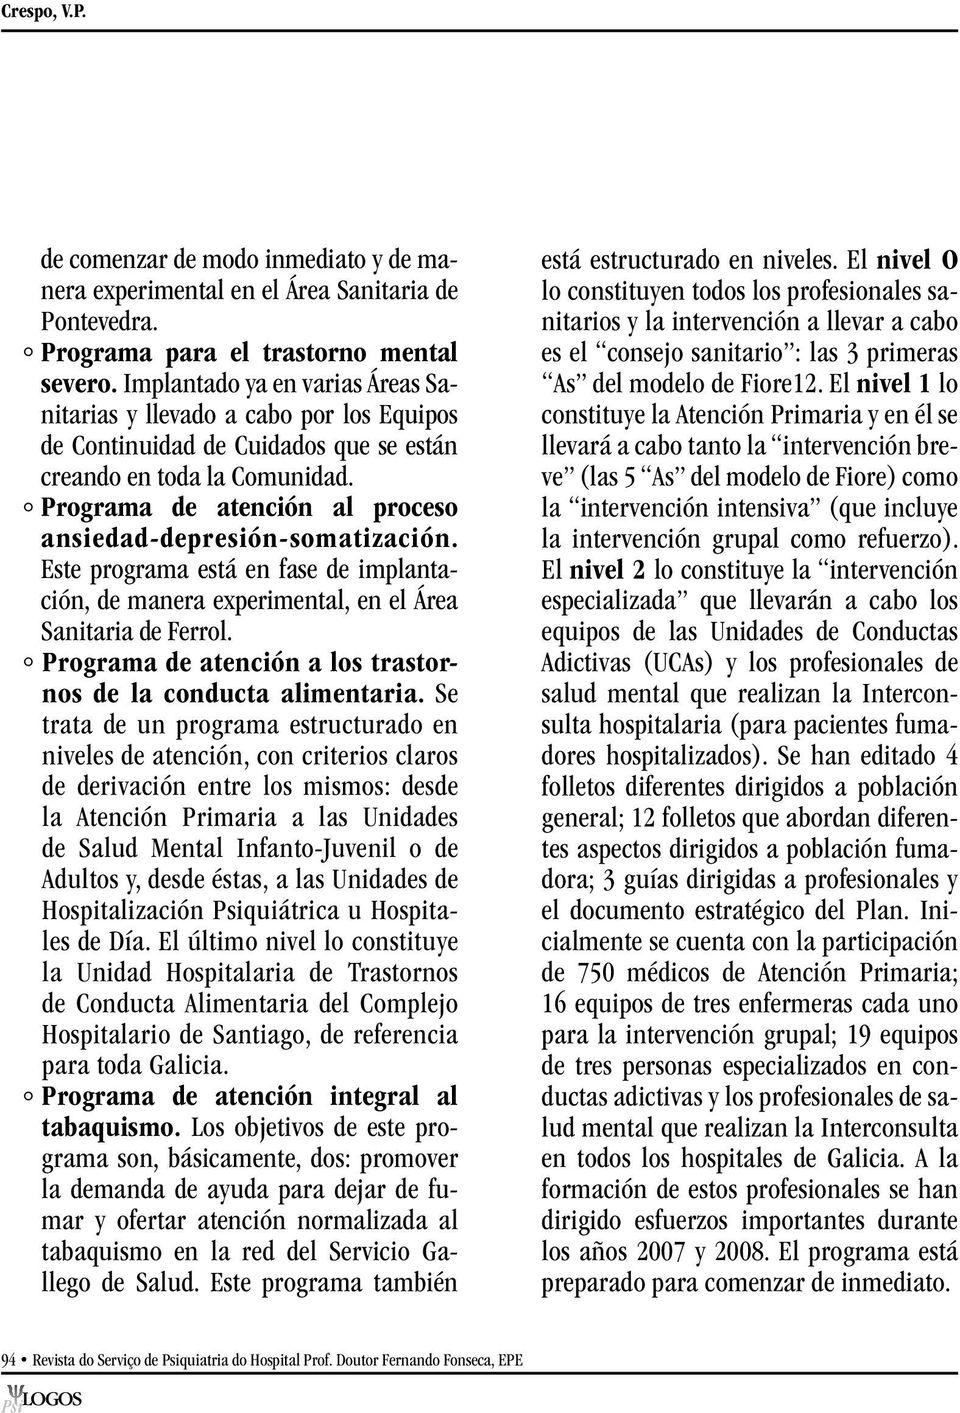 Programa de atención al proceso ansiedad depresión somatización. Este programa está en fase de implantación, de manera experimental, en el Área Sanitaria de Ferrol.